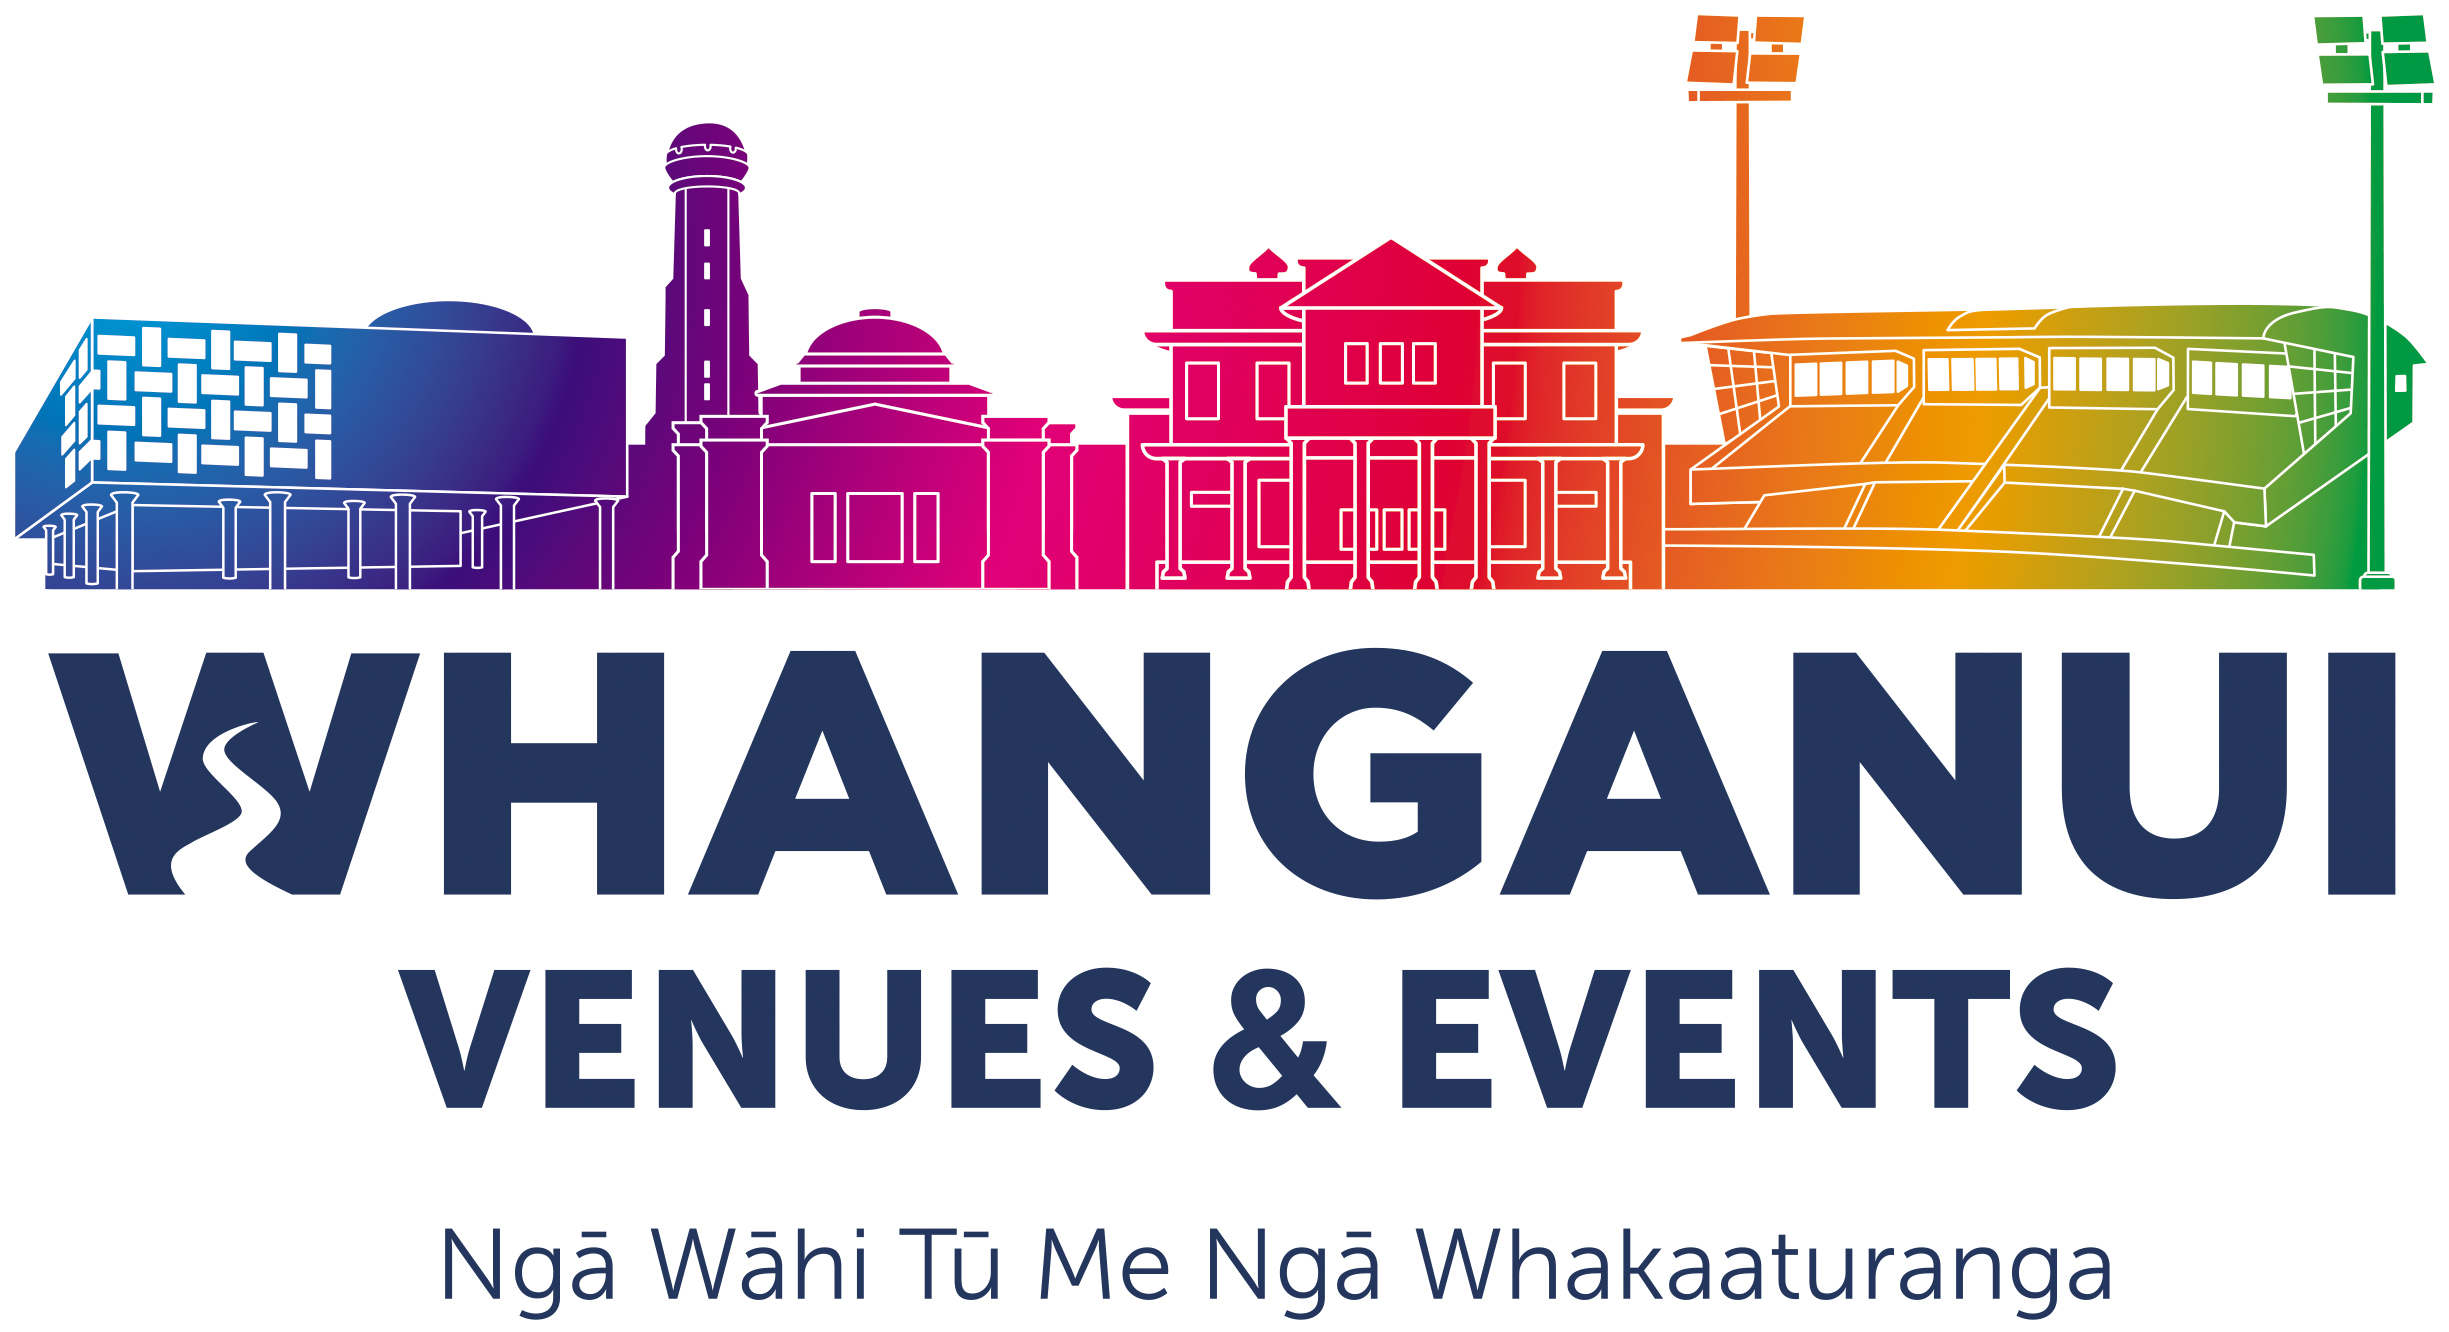 
Whanganui Venues & Events